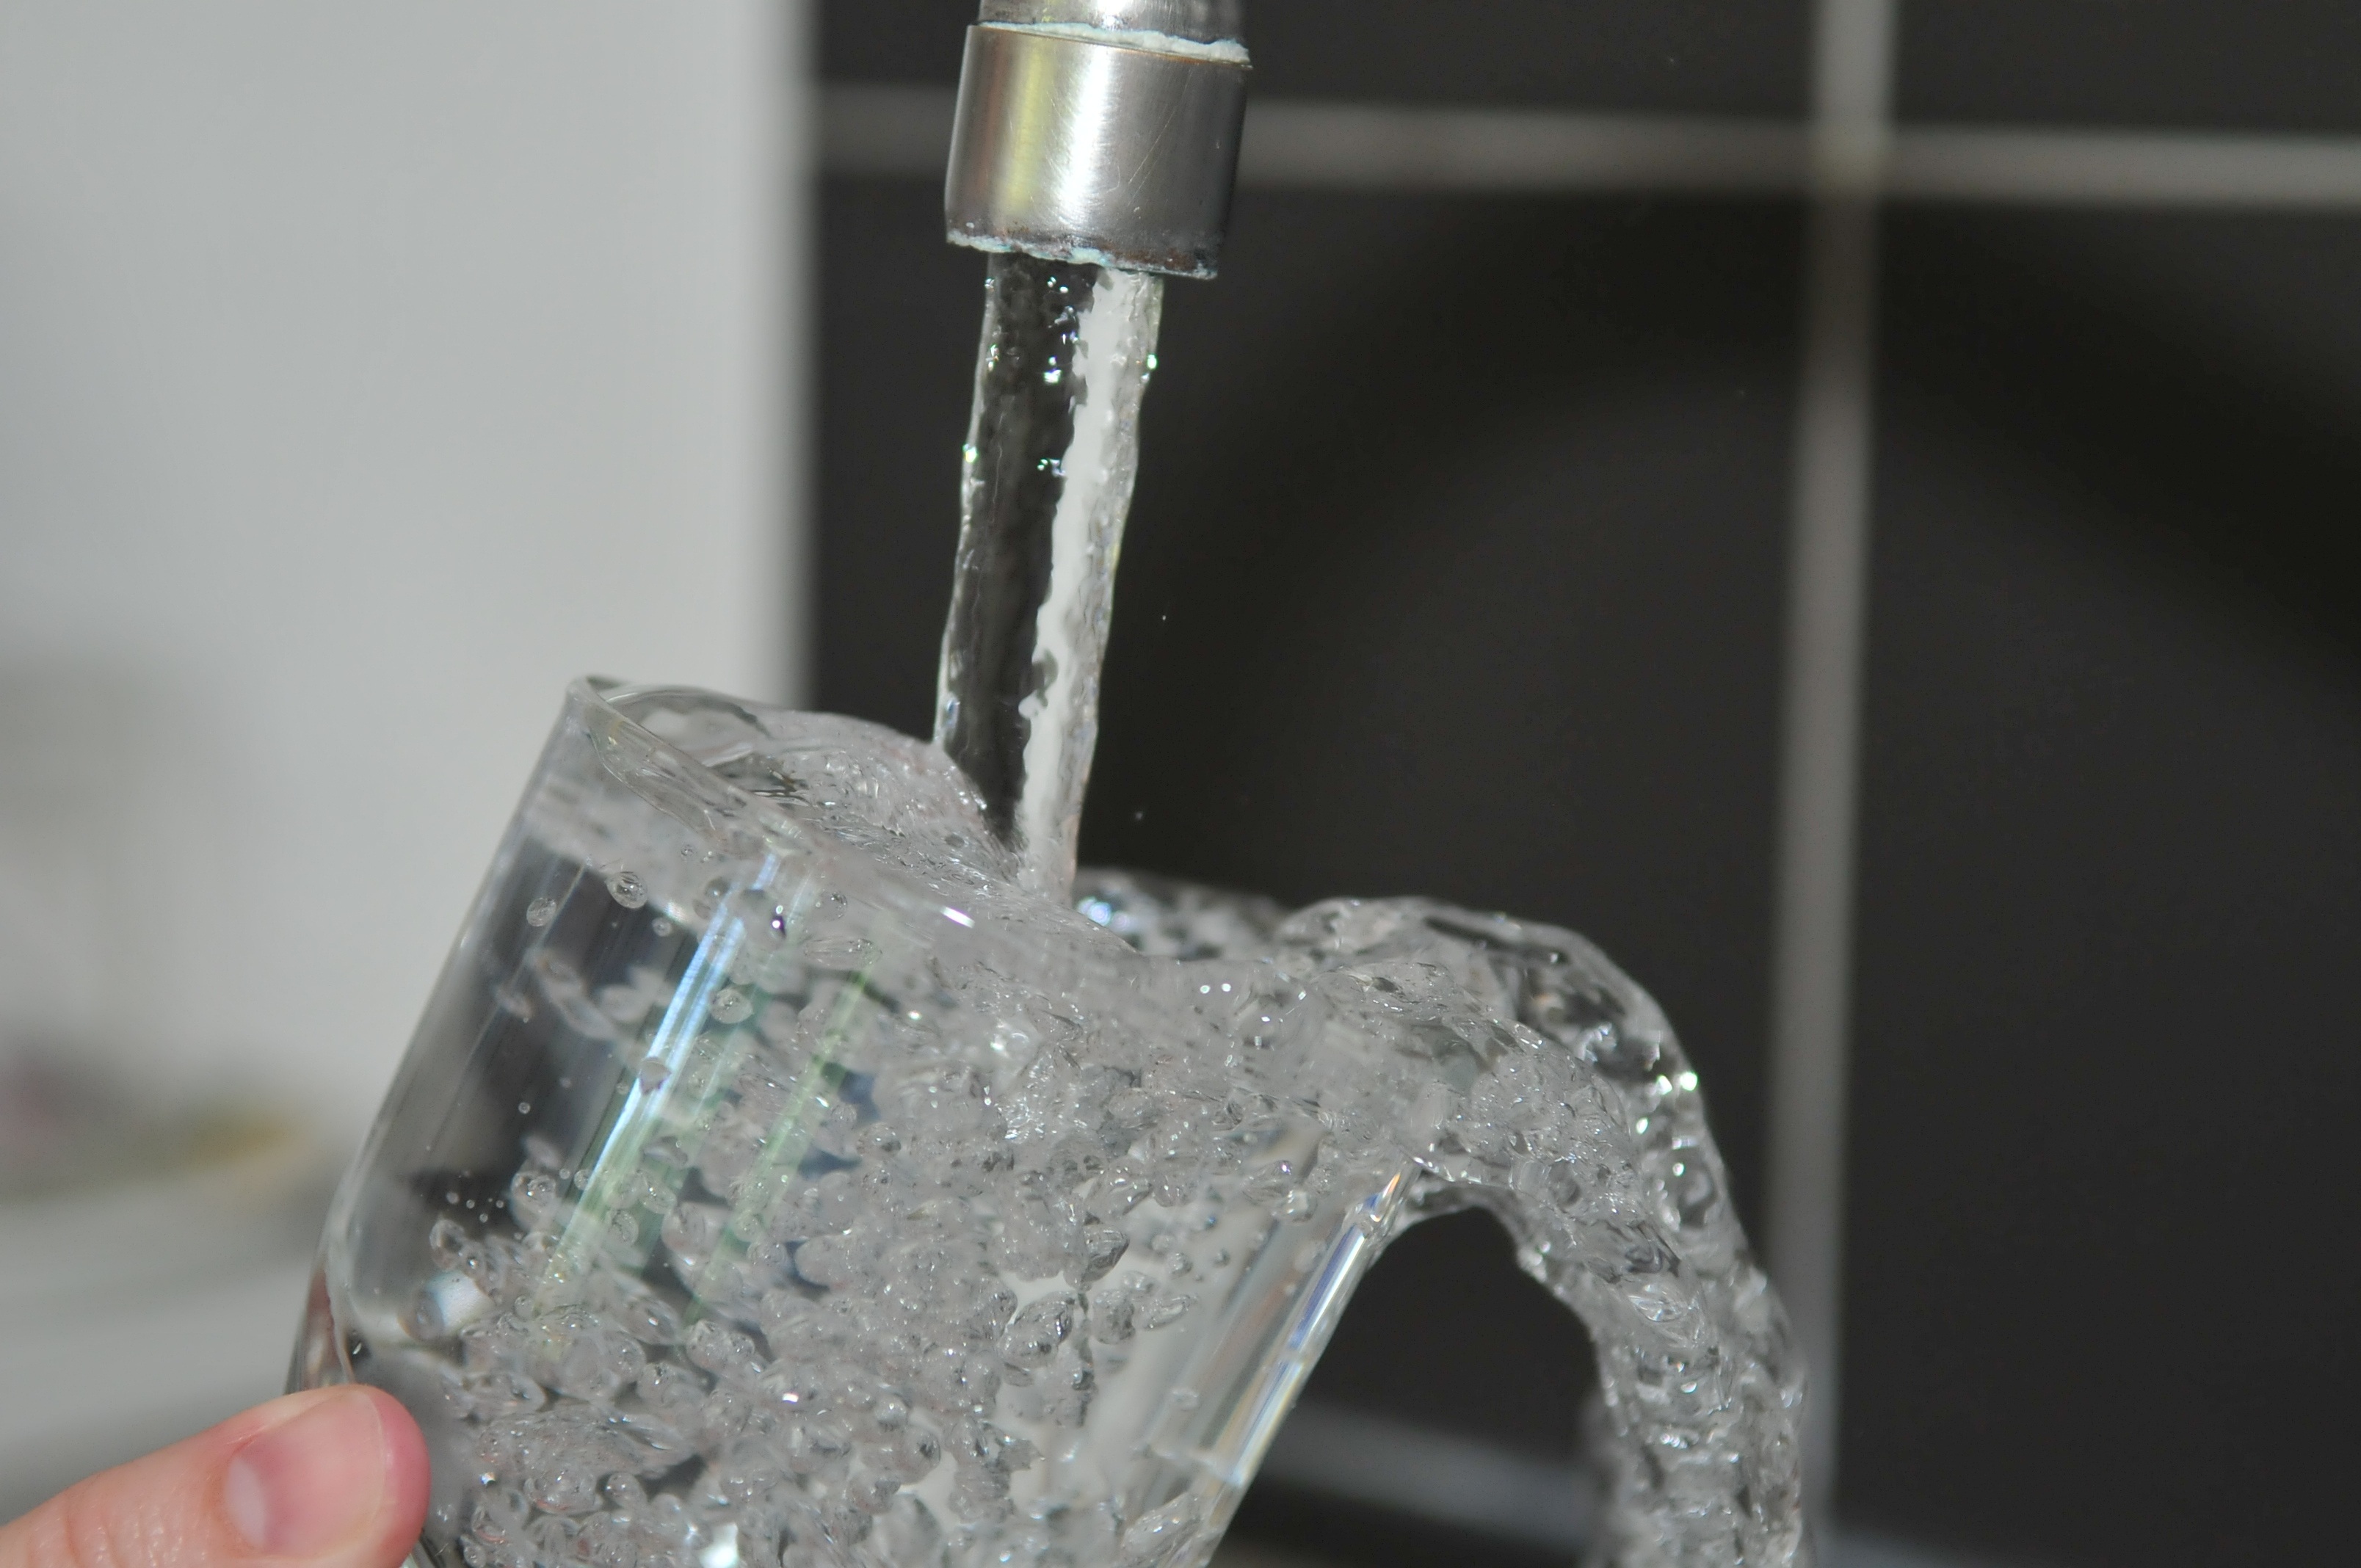 Serie Notfallvorsorge - Teil 5: Wasservorrat für die Hygiene